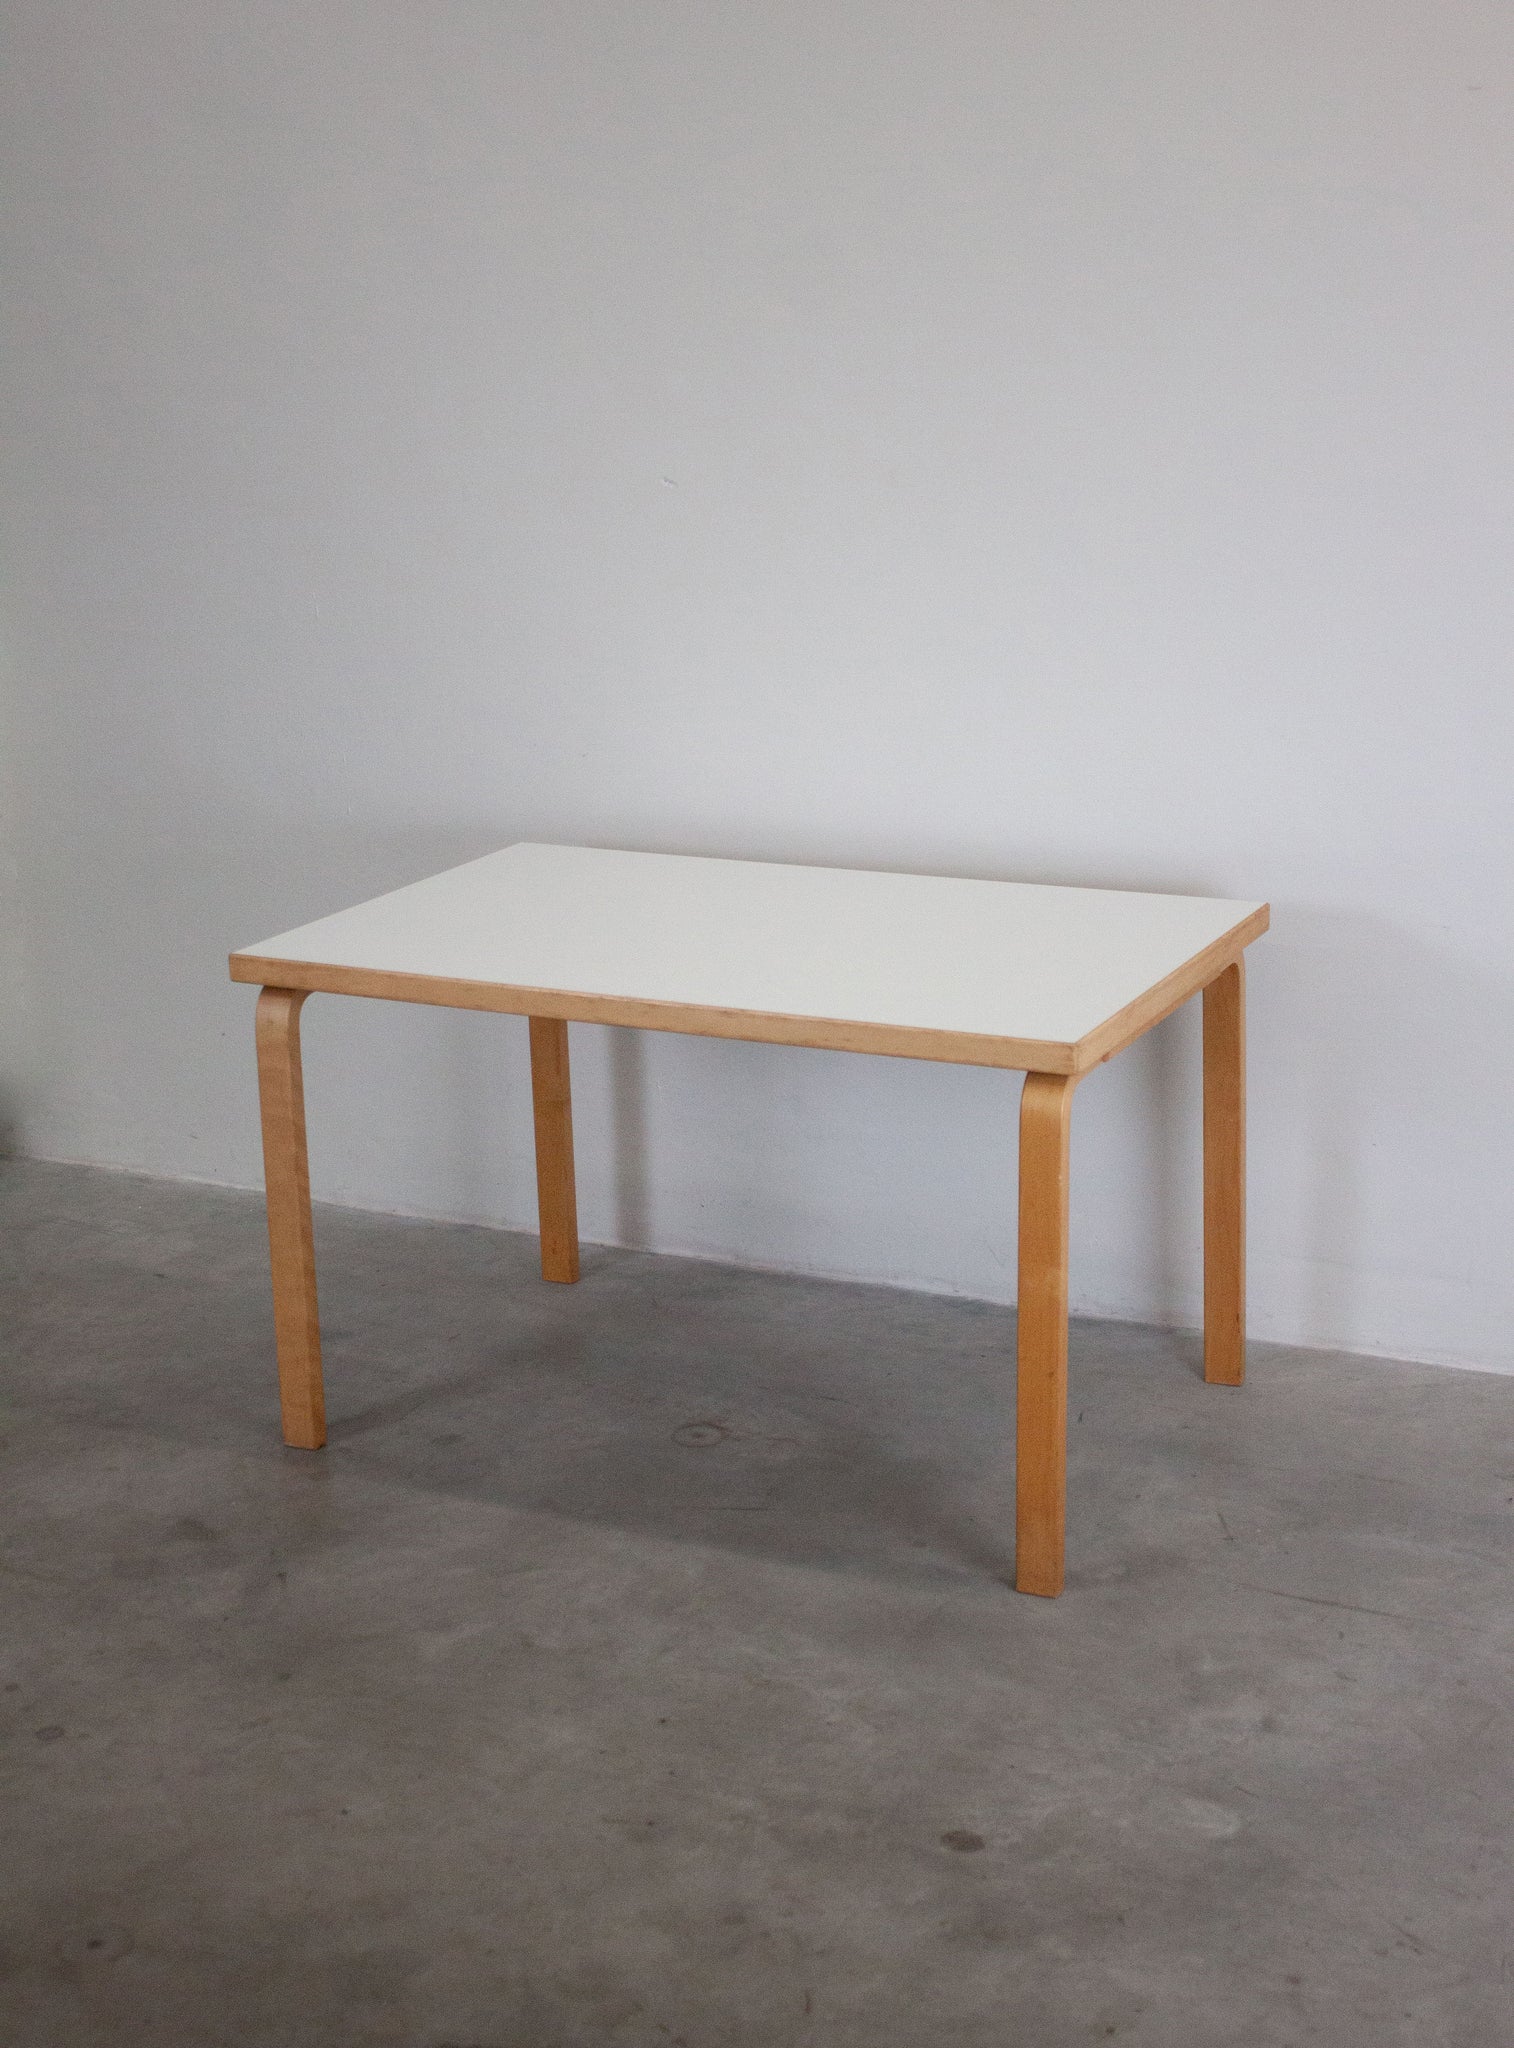 Artek Model 81B Dining Table by Alvar Aalto (White)